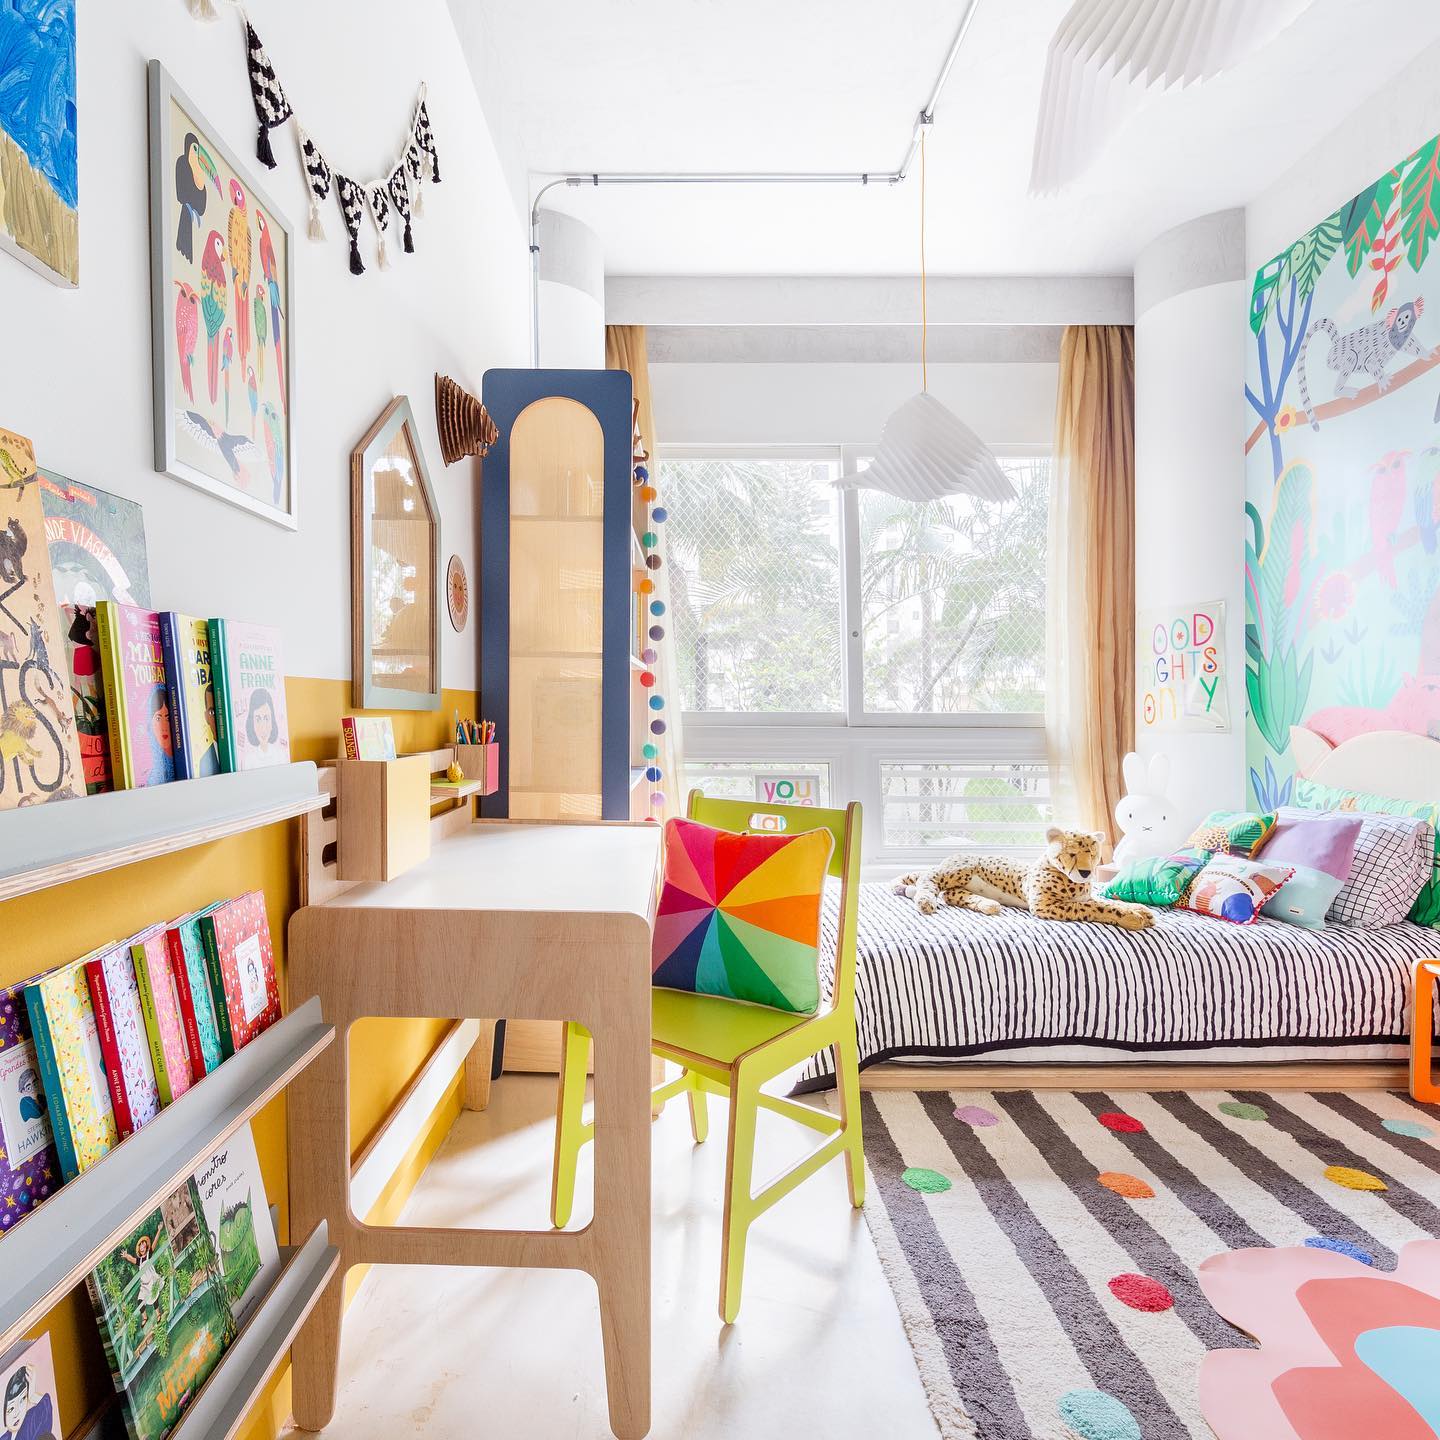 Habitación infantil planificada: un espacio de sueños, aventuras y crecimiento